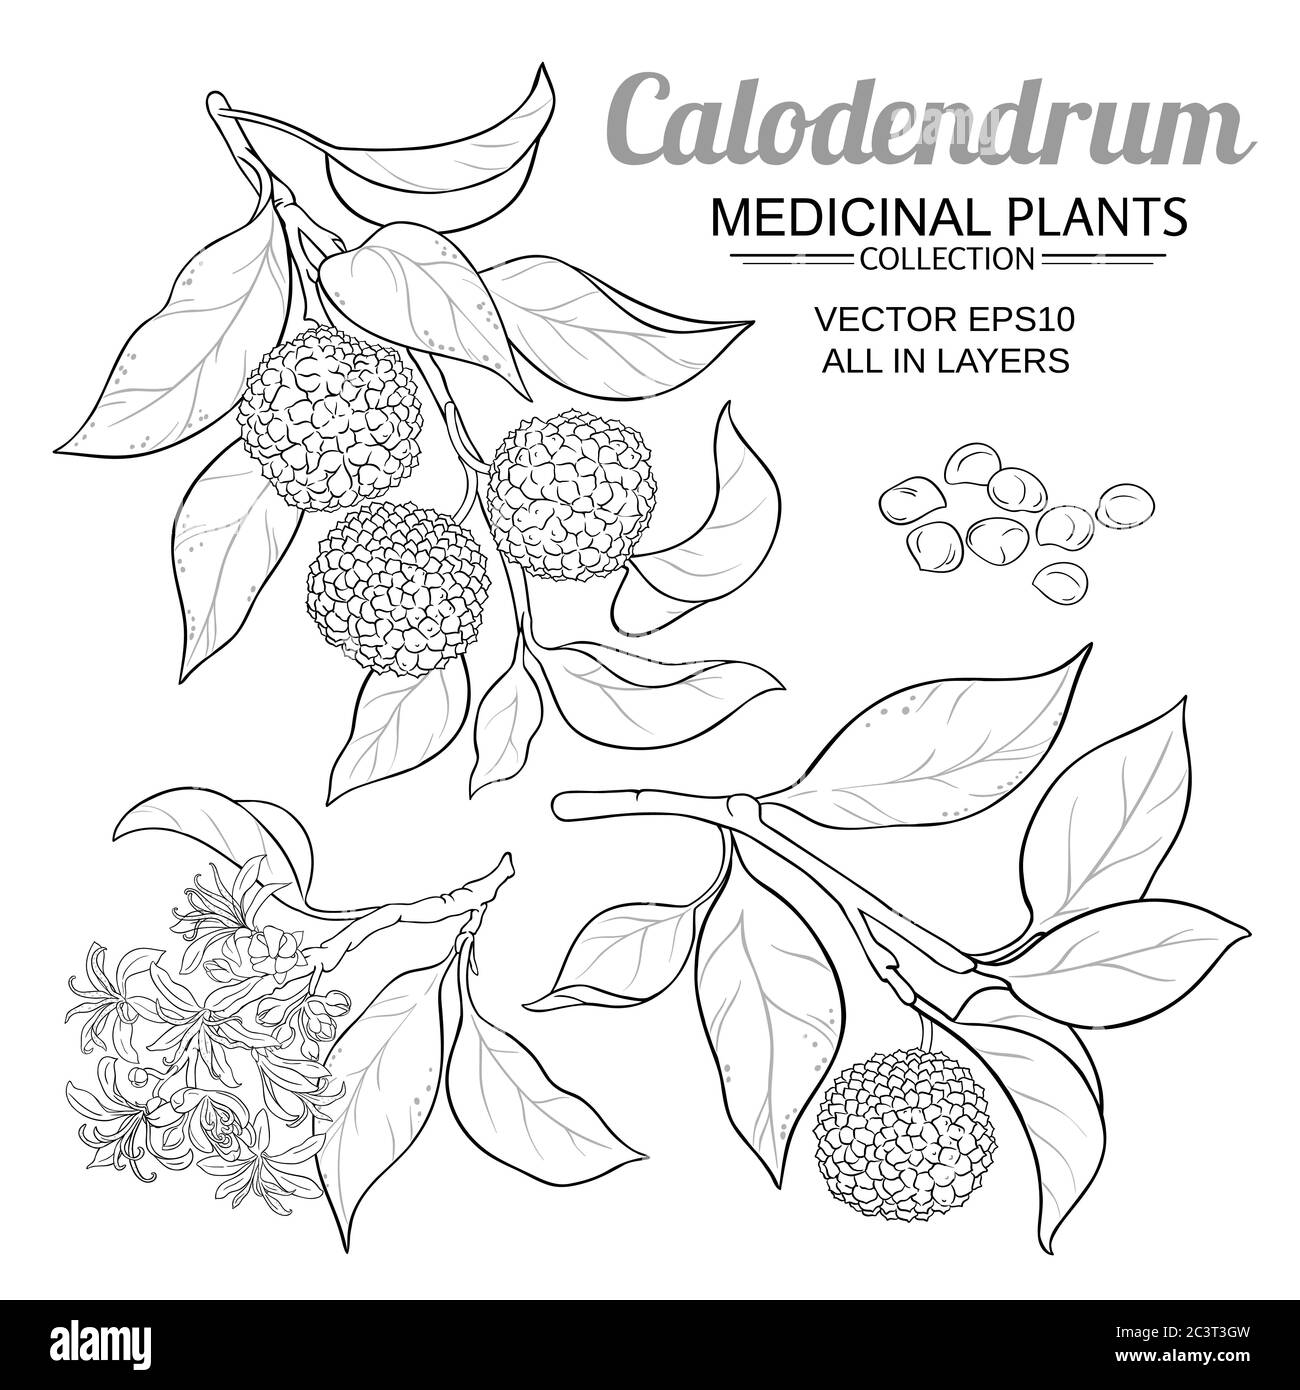 ensemble de vecteurs calodendrum Illustration de Vecteur